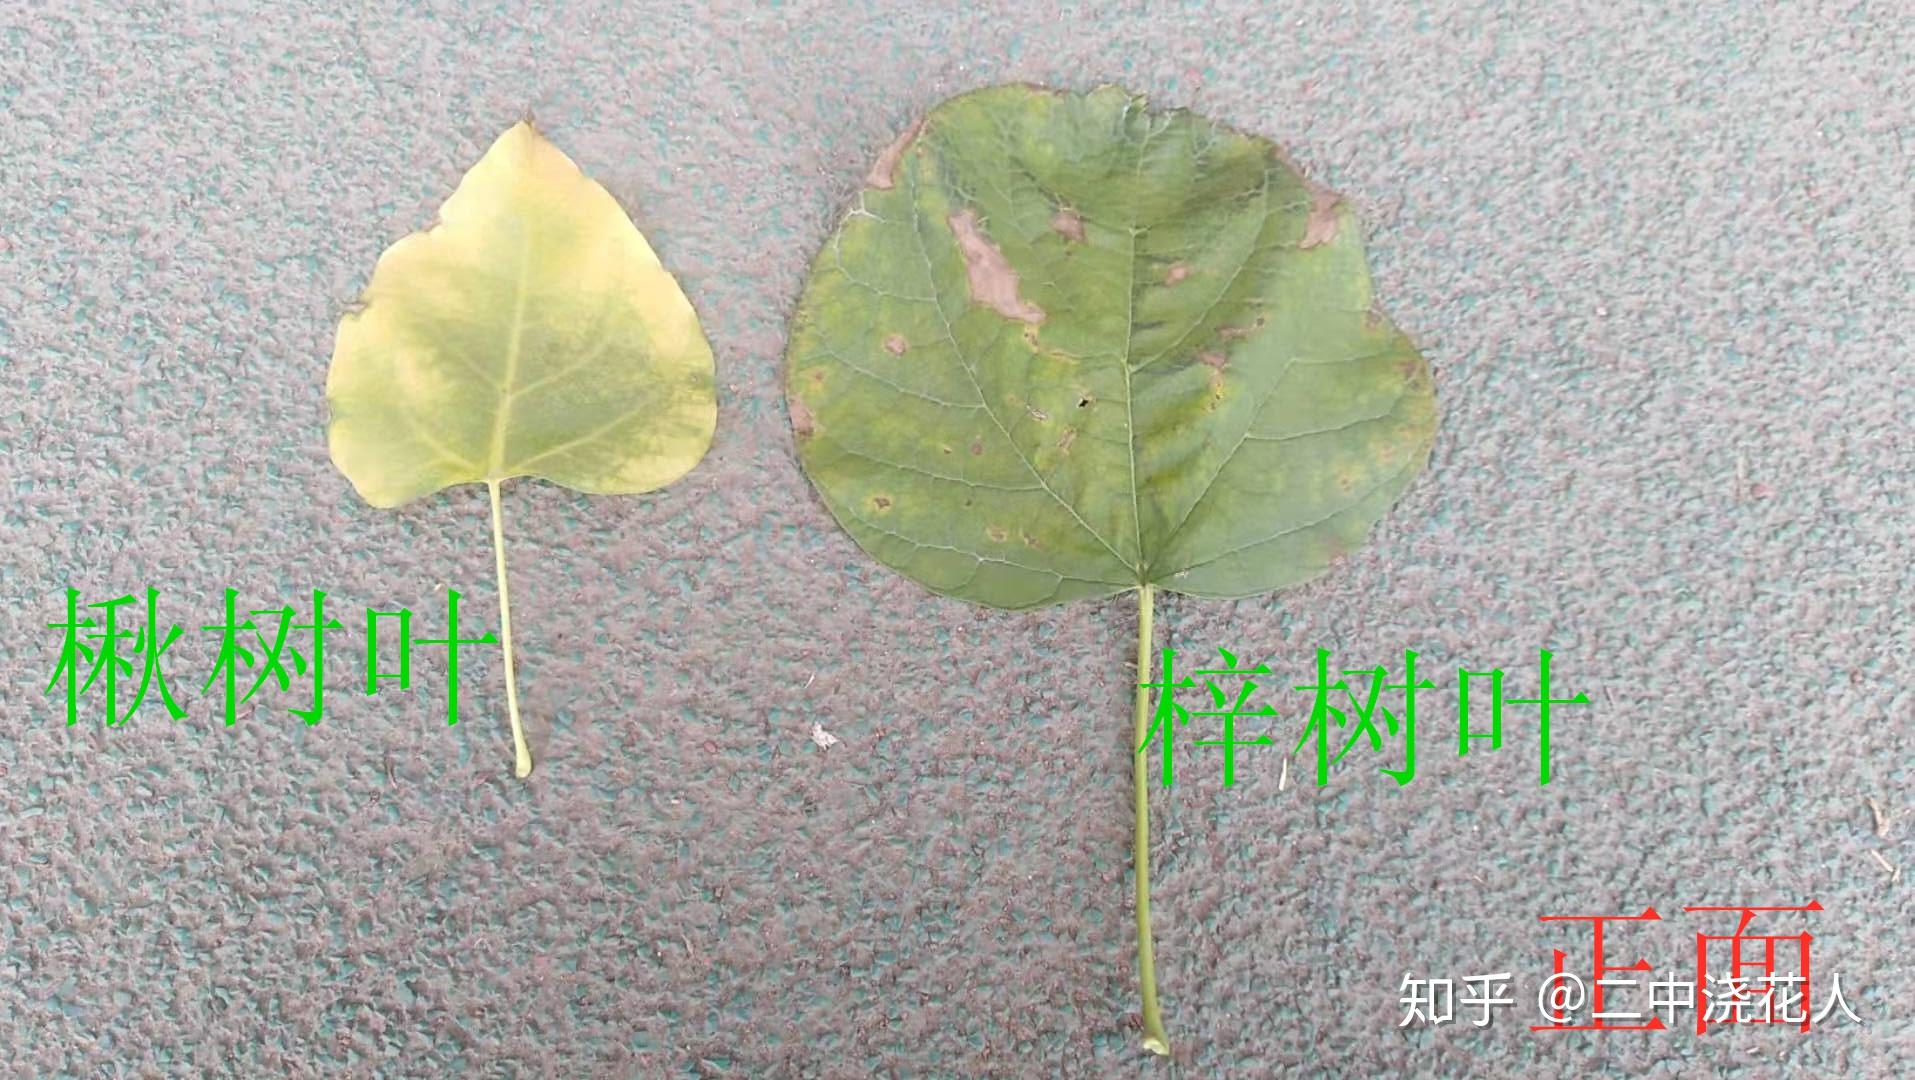 梓树和梧桐树的区别图片